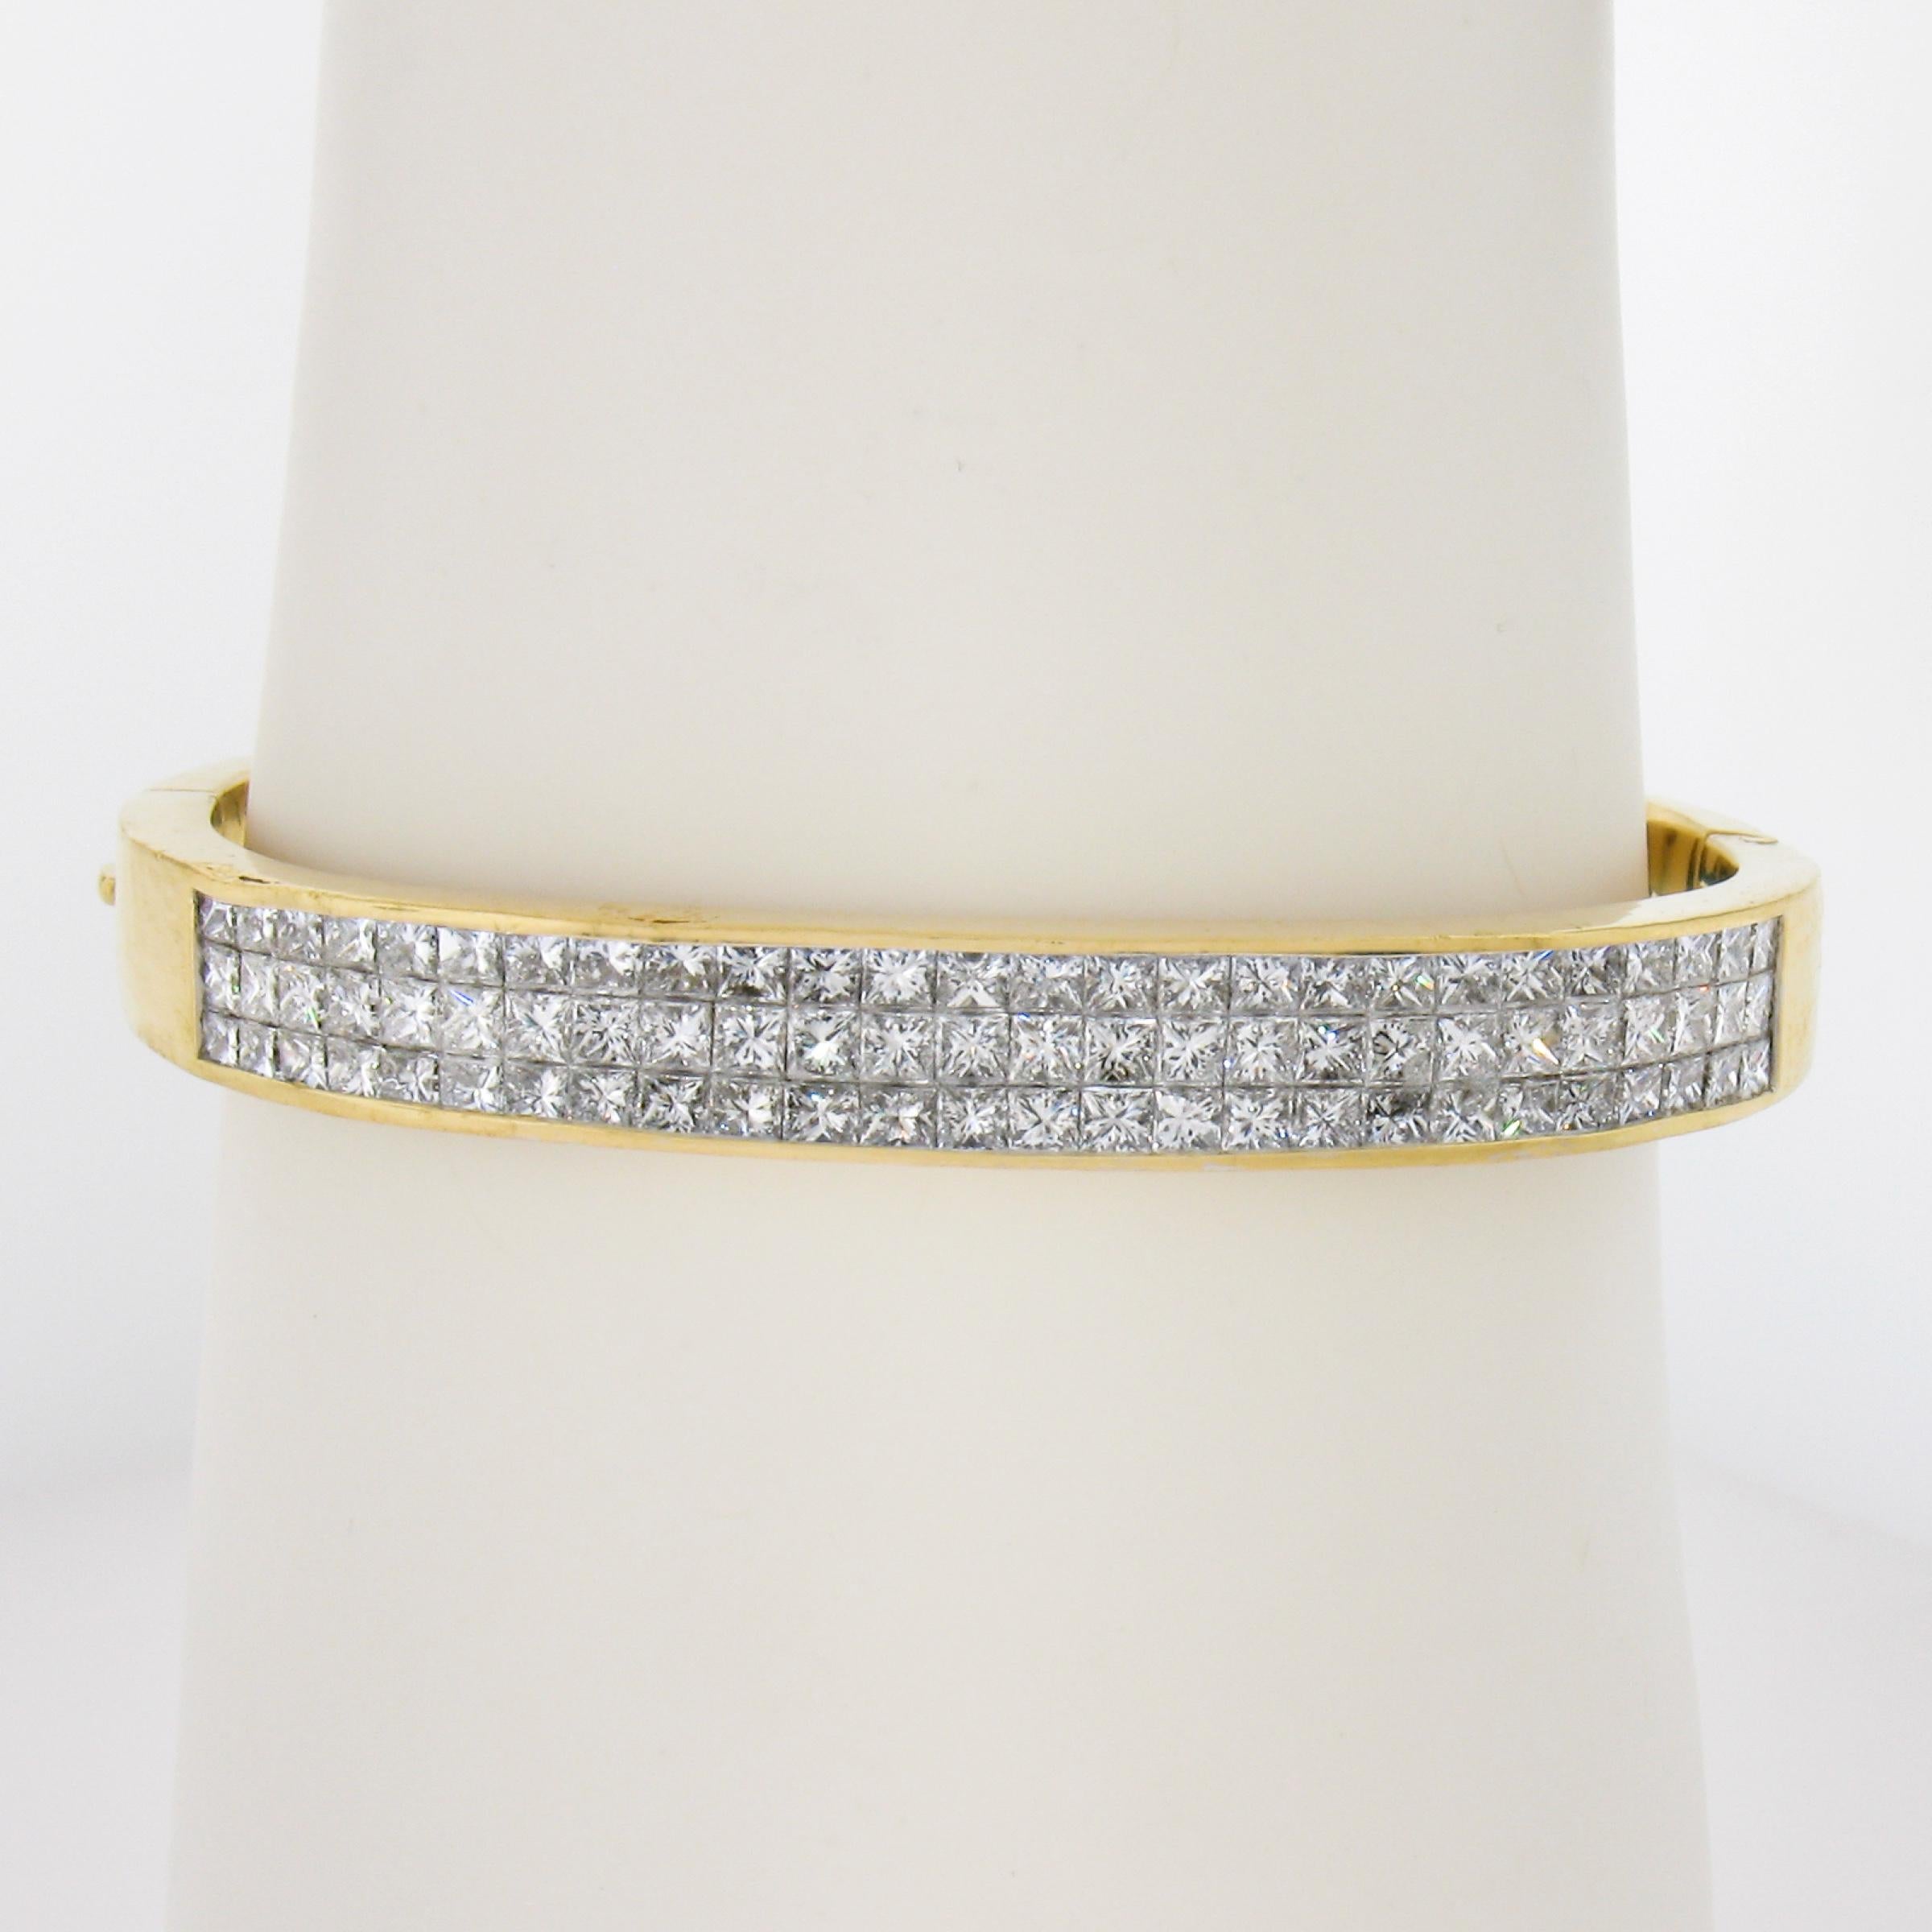 --Stein(e):--
(78) Echte natürliche Diamanten - Prinzessschliff - unsichtbare Kanalfassung - Farbe F/G - Reinheit VS1/VS2
Karat Gesamtgewicht:	6 (ca.)

MATERIAL: 18K Massiv Gelbgold
Gewicht: 37,91 Gramm
Größe: Passt bis zu einem